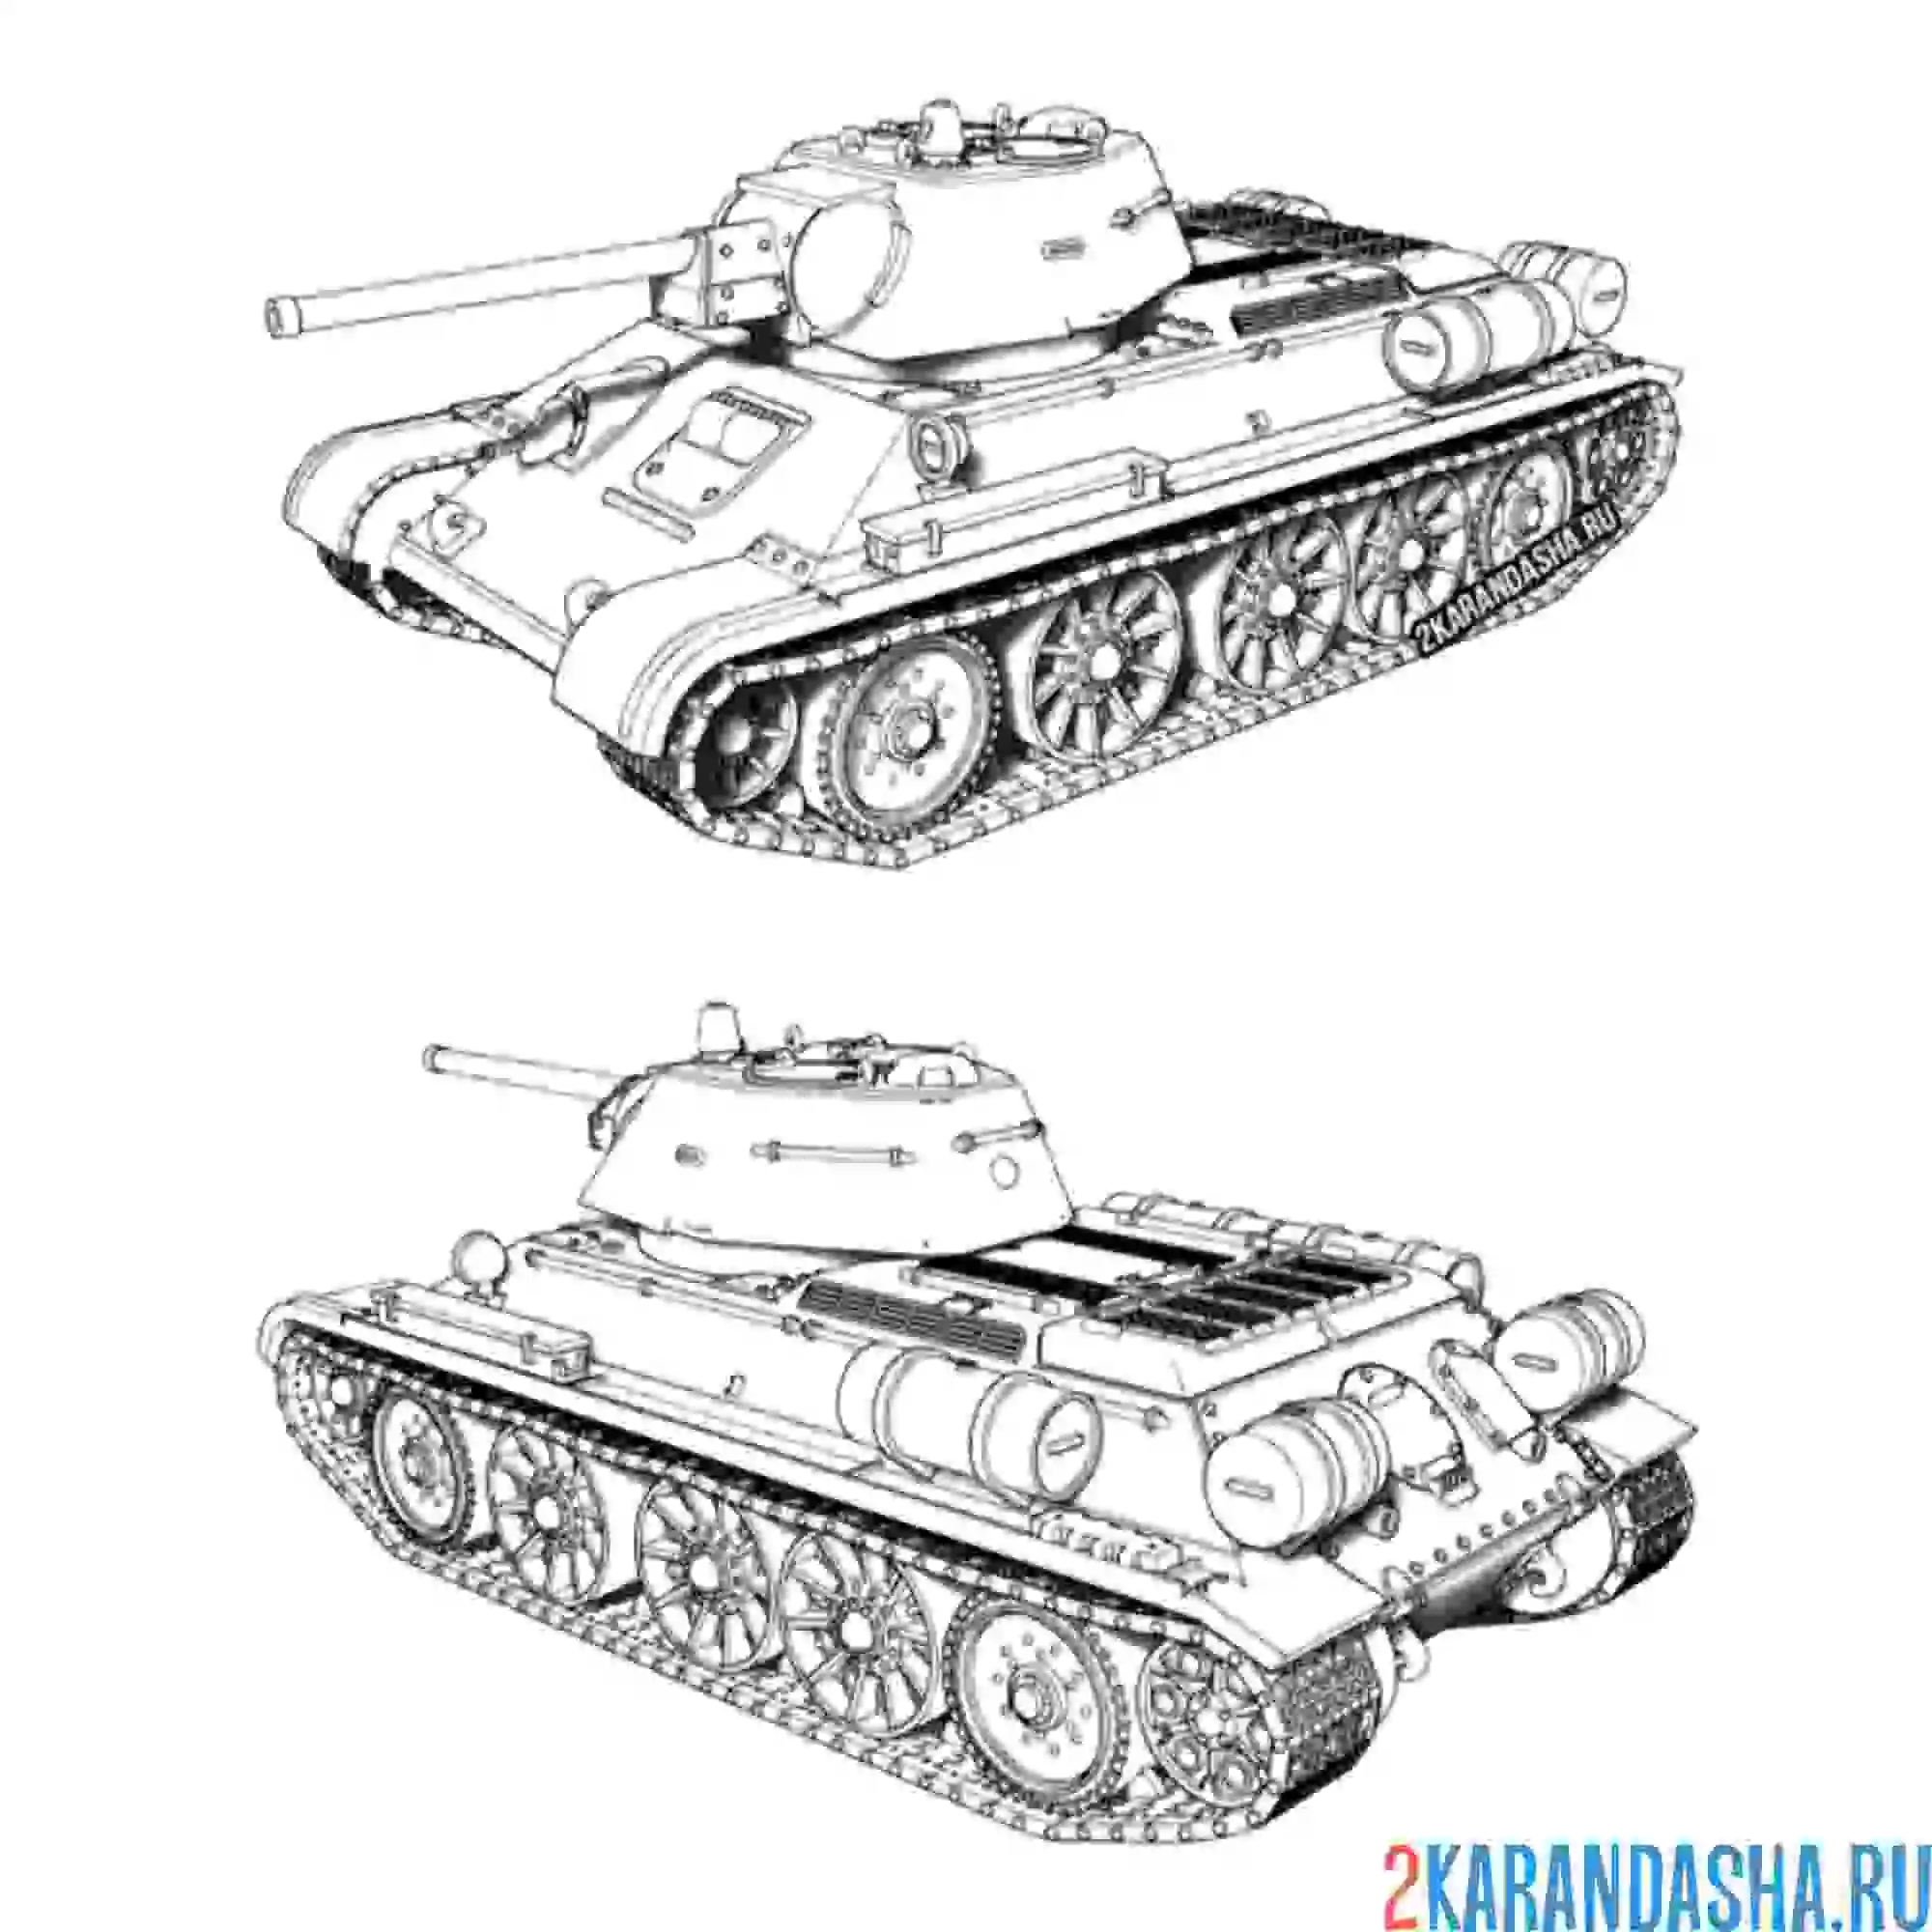 Раскраска танк т-34 вид сбоку и сзади